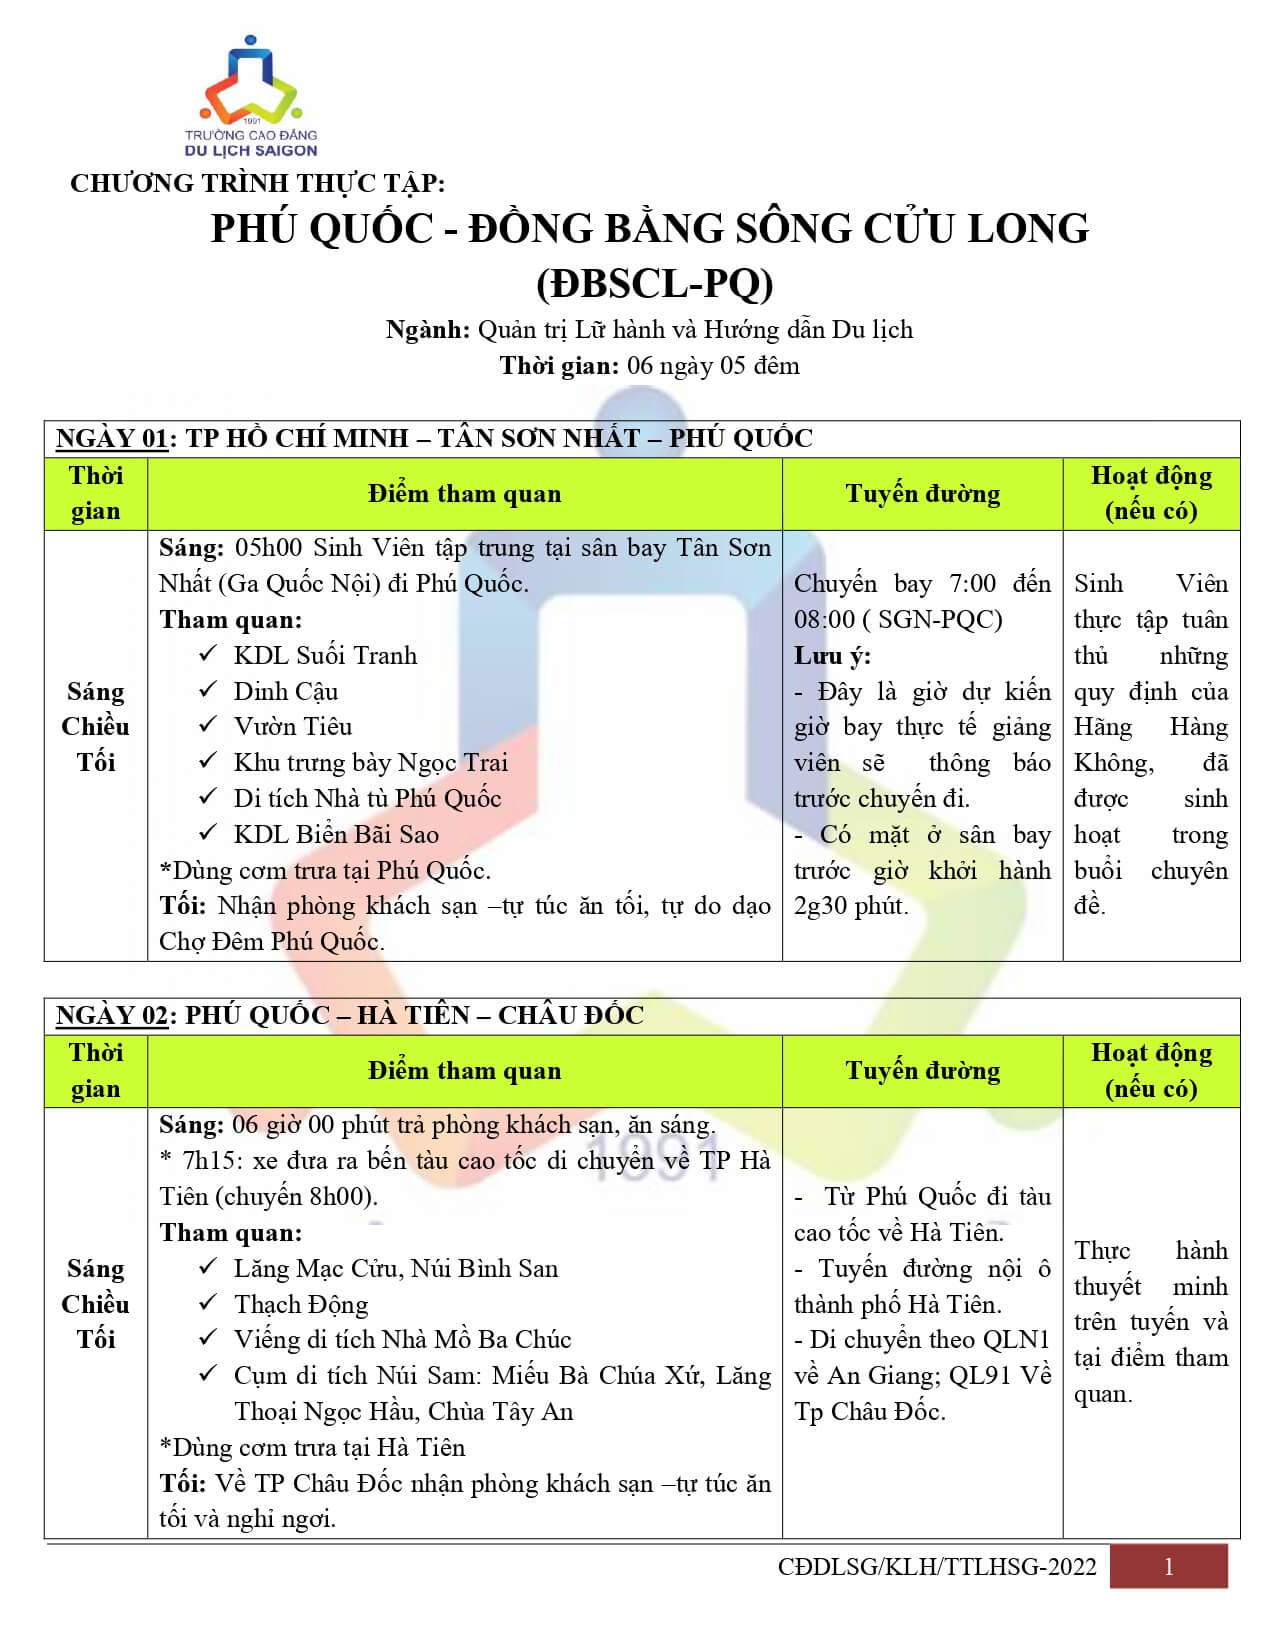 2- Chương trình Đồng bằng sông Cửu Long - Phú Quốc (06 ngày 05 đêm)_page-0001